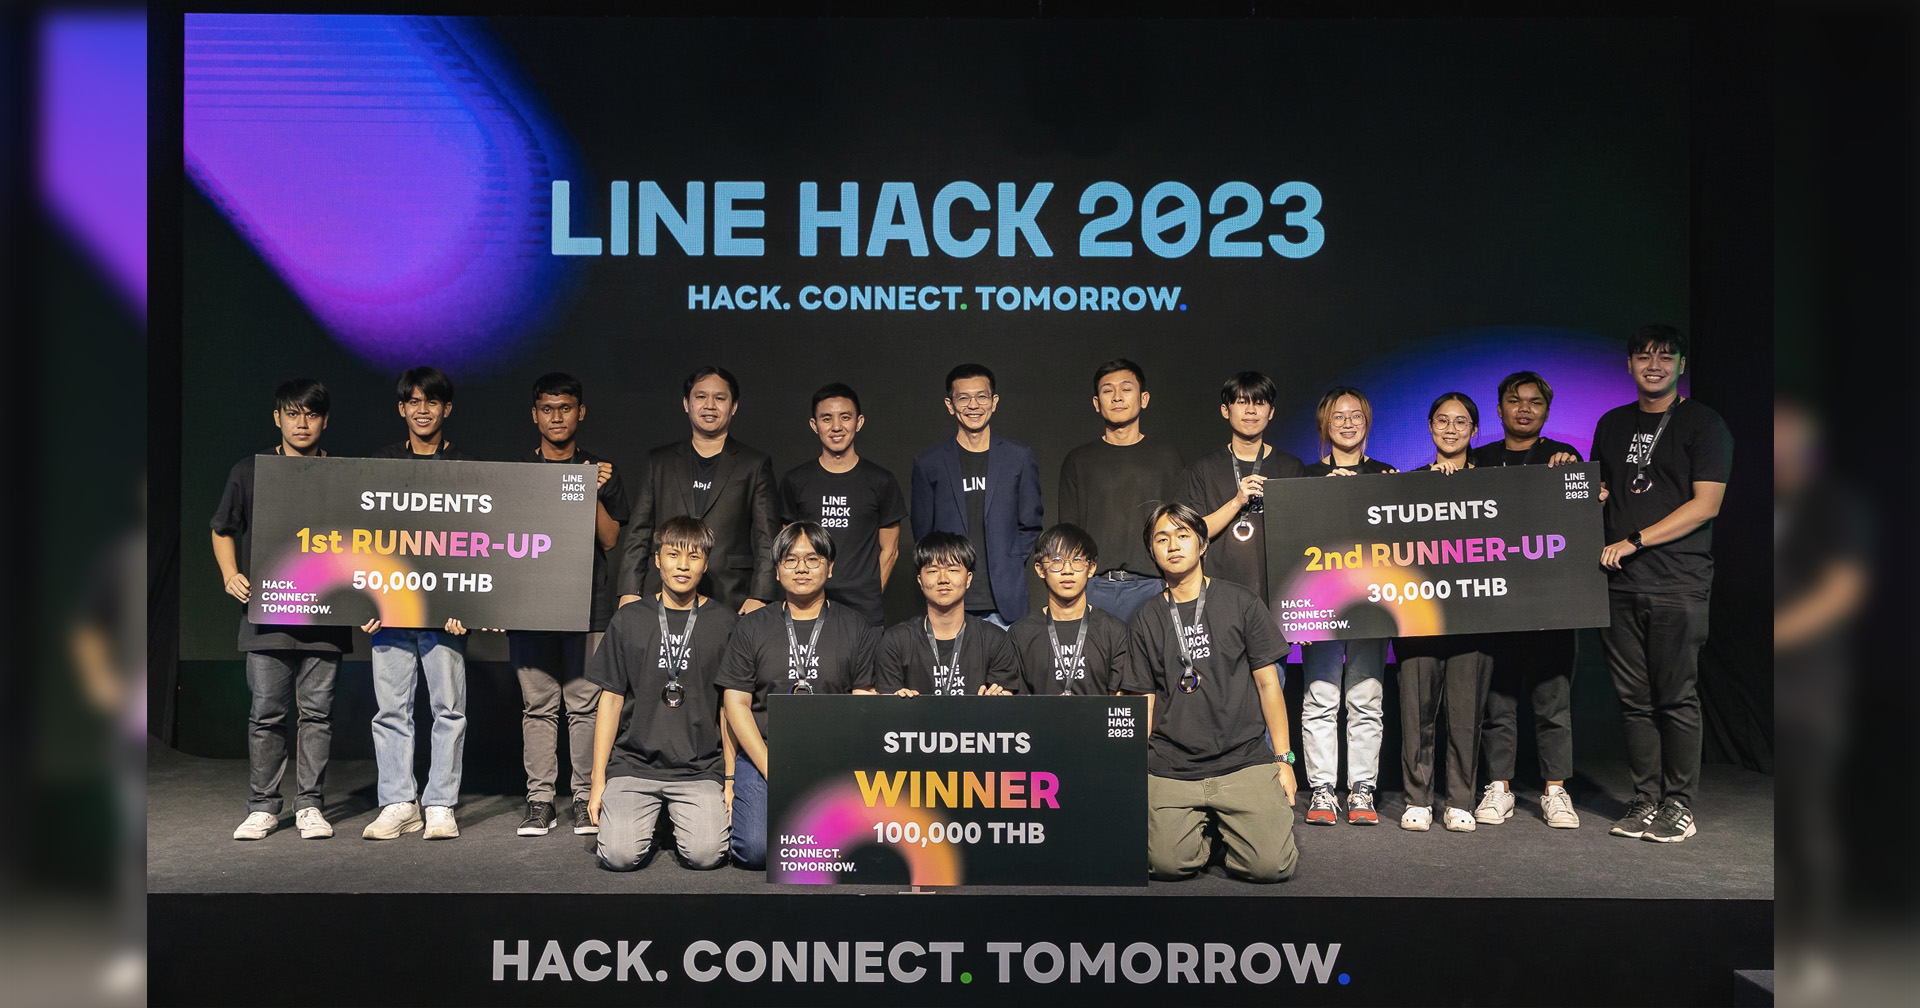 LINE ประกาศผลผู้ชนะ LINE HACK 2023พบเทรนด์ใหม่นักพัฒนาไทย สร้างโซลูชั่นในร้านกินดื่ม